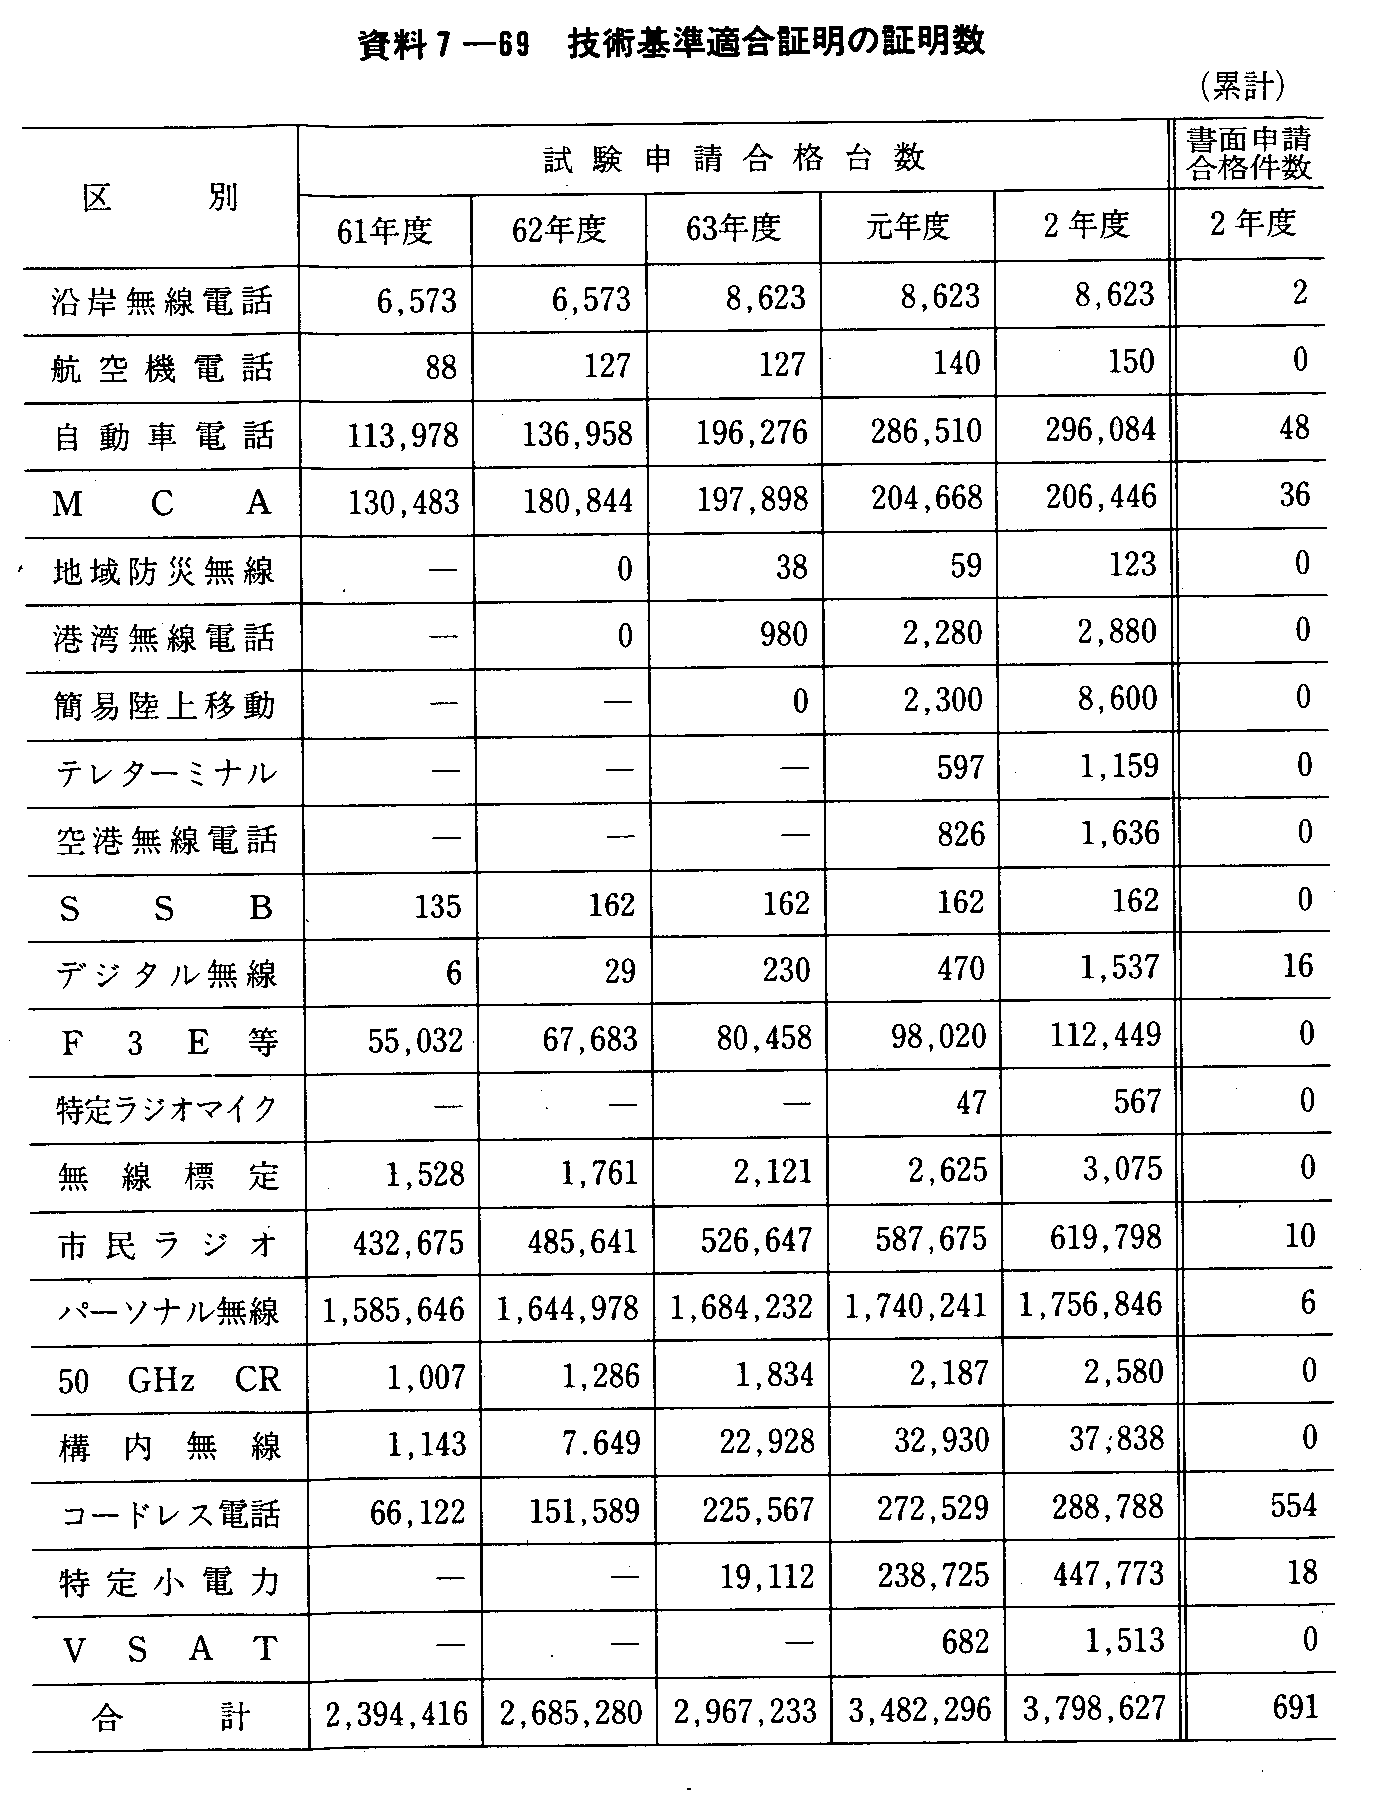 資料7-69 技術基準適合証明の証明数(累計)